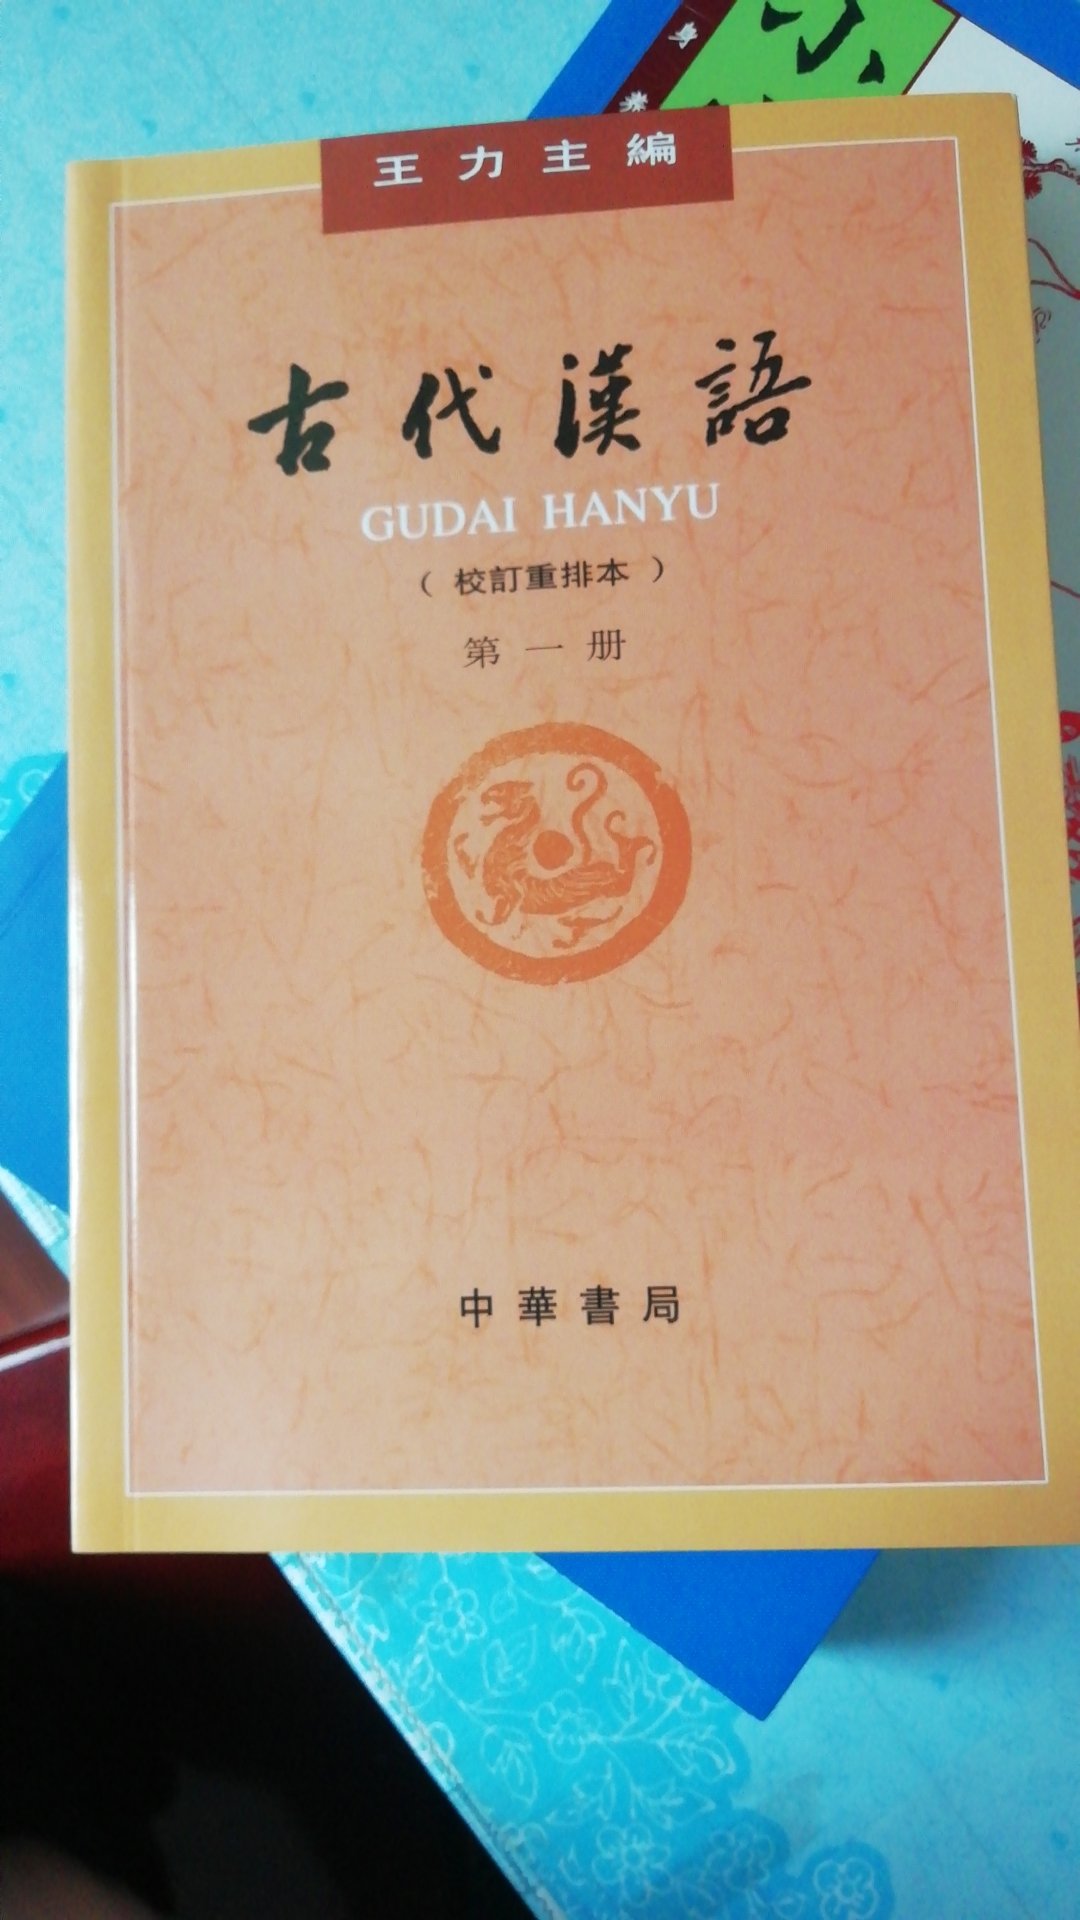 古代汉语入门的好书。